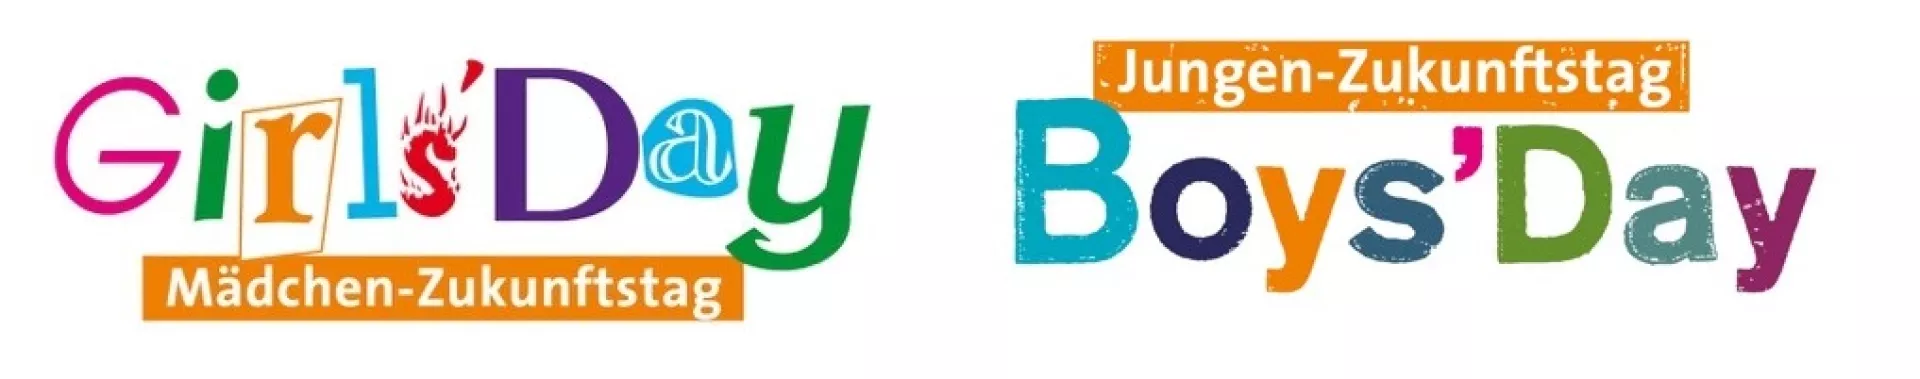 Girls'Day Logo und Boys'Day Logo